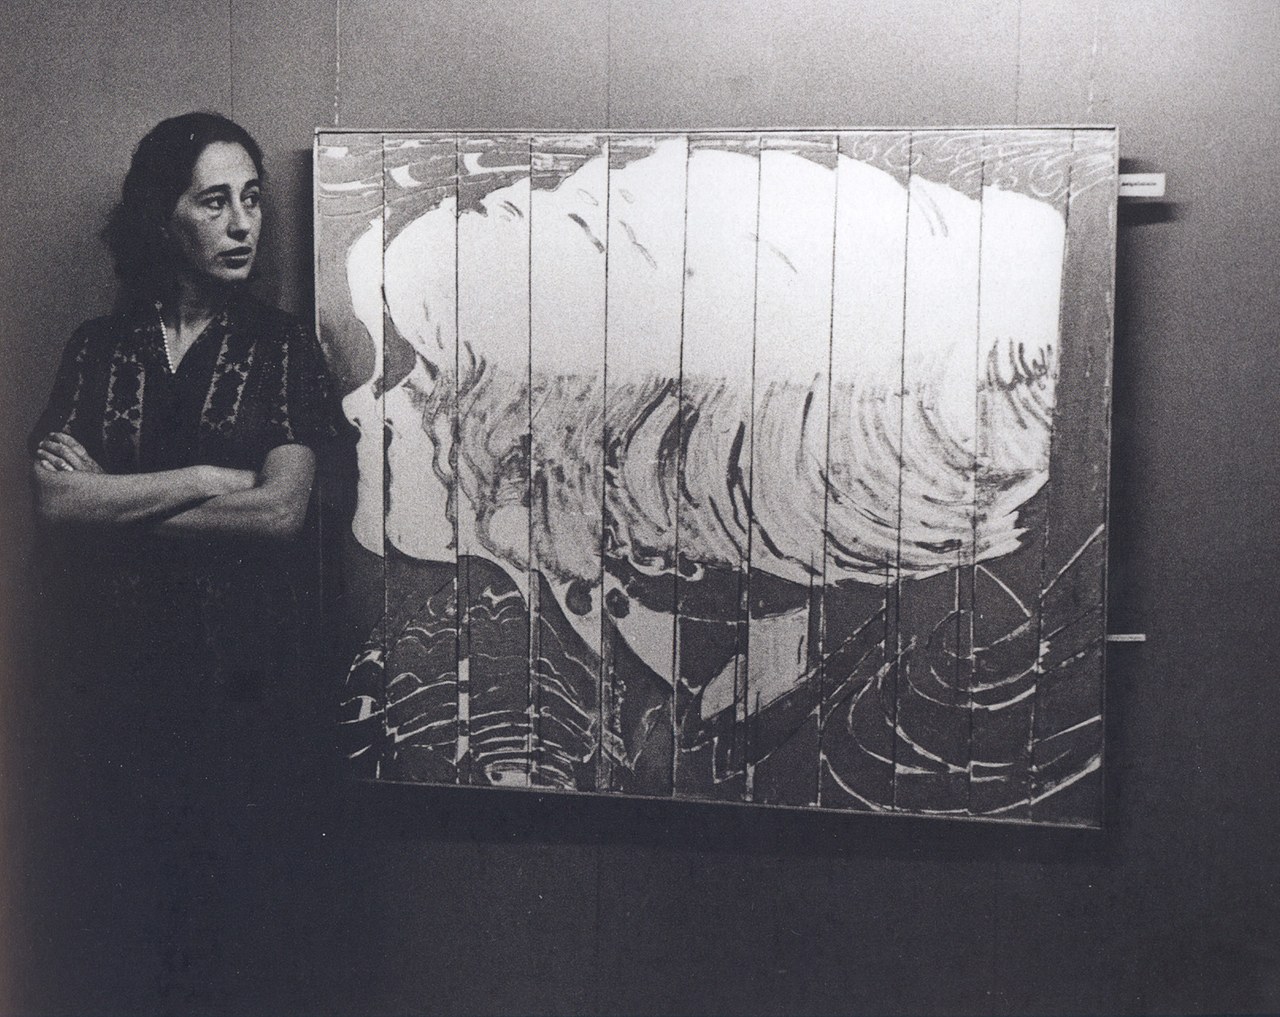  Giosetta Fioroni vicino all’opera Fascino durante l’allestimento della mostra personale alla Galleria del Cavallino, Venezia, aprile 1965